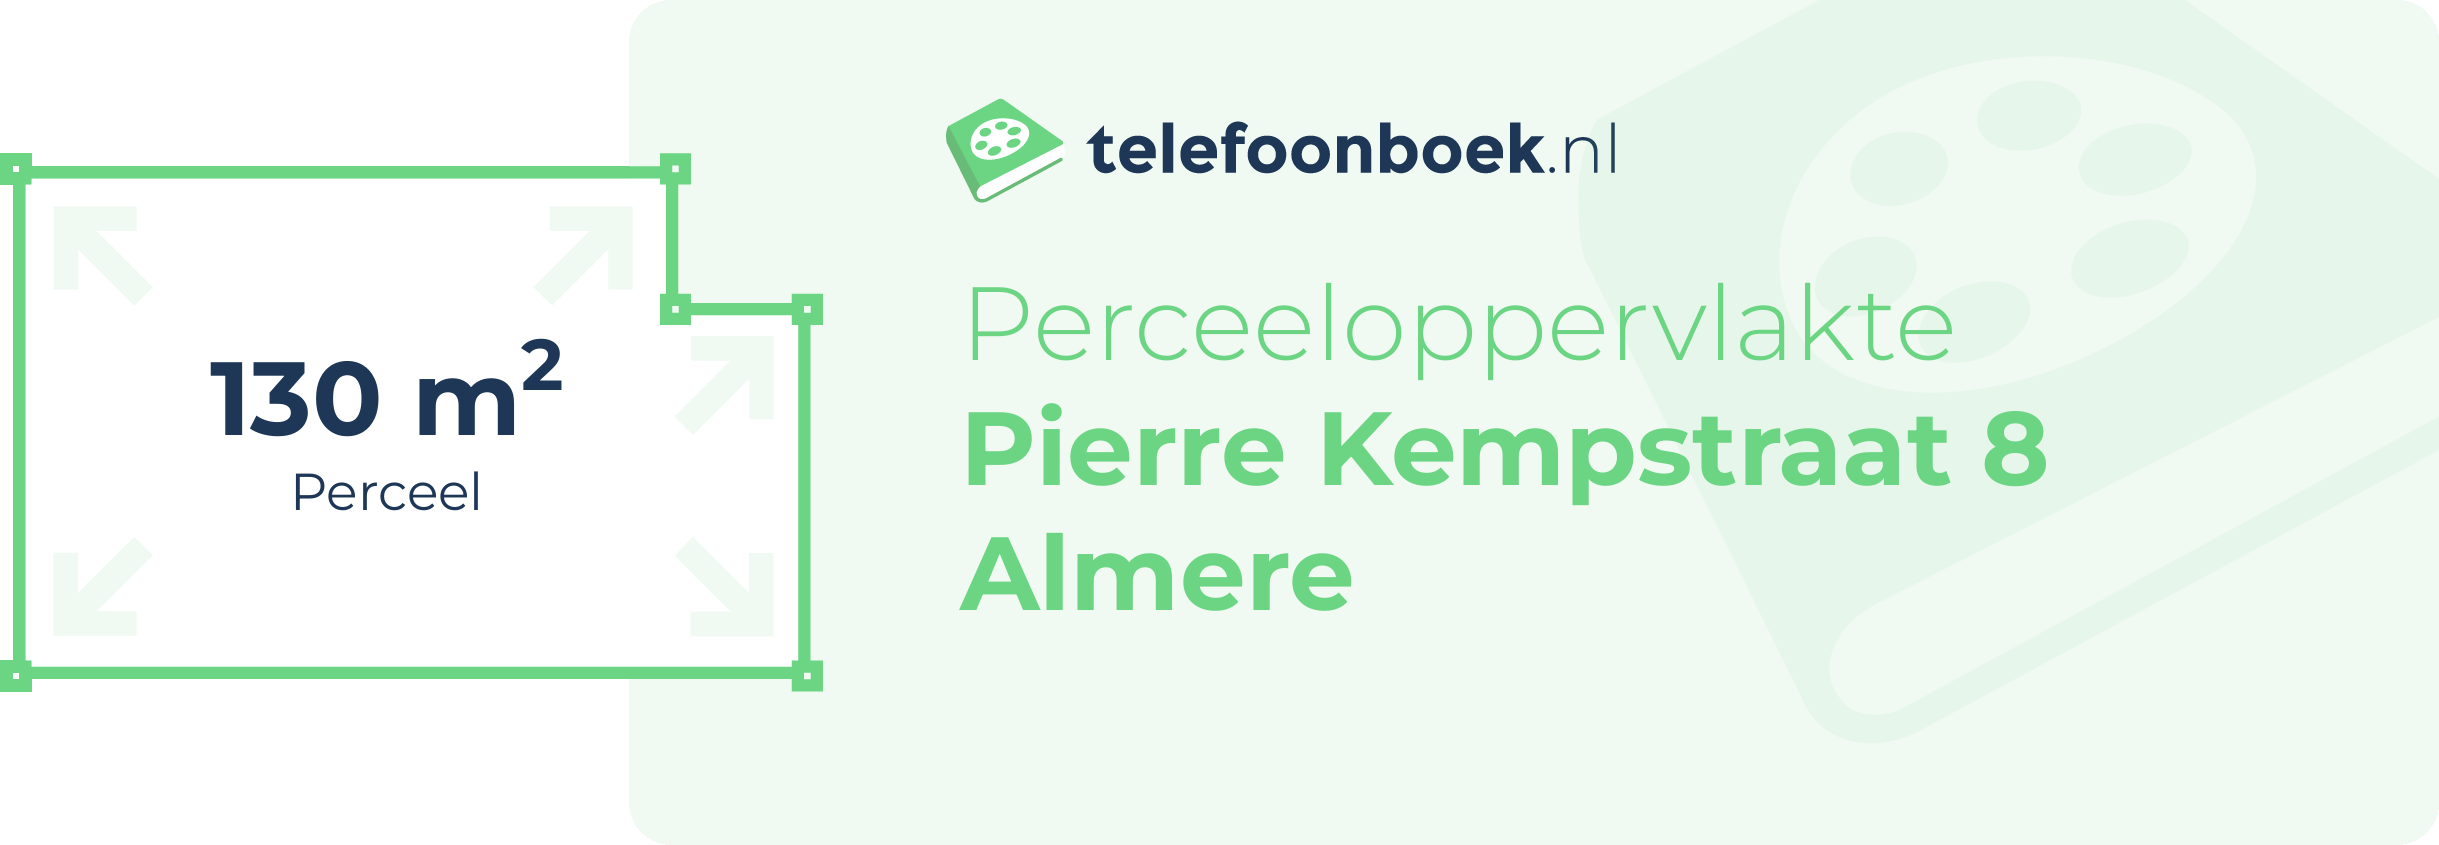 Perceeloppervlakte Pierre Kempstraat 8 Almere